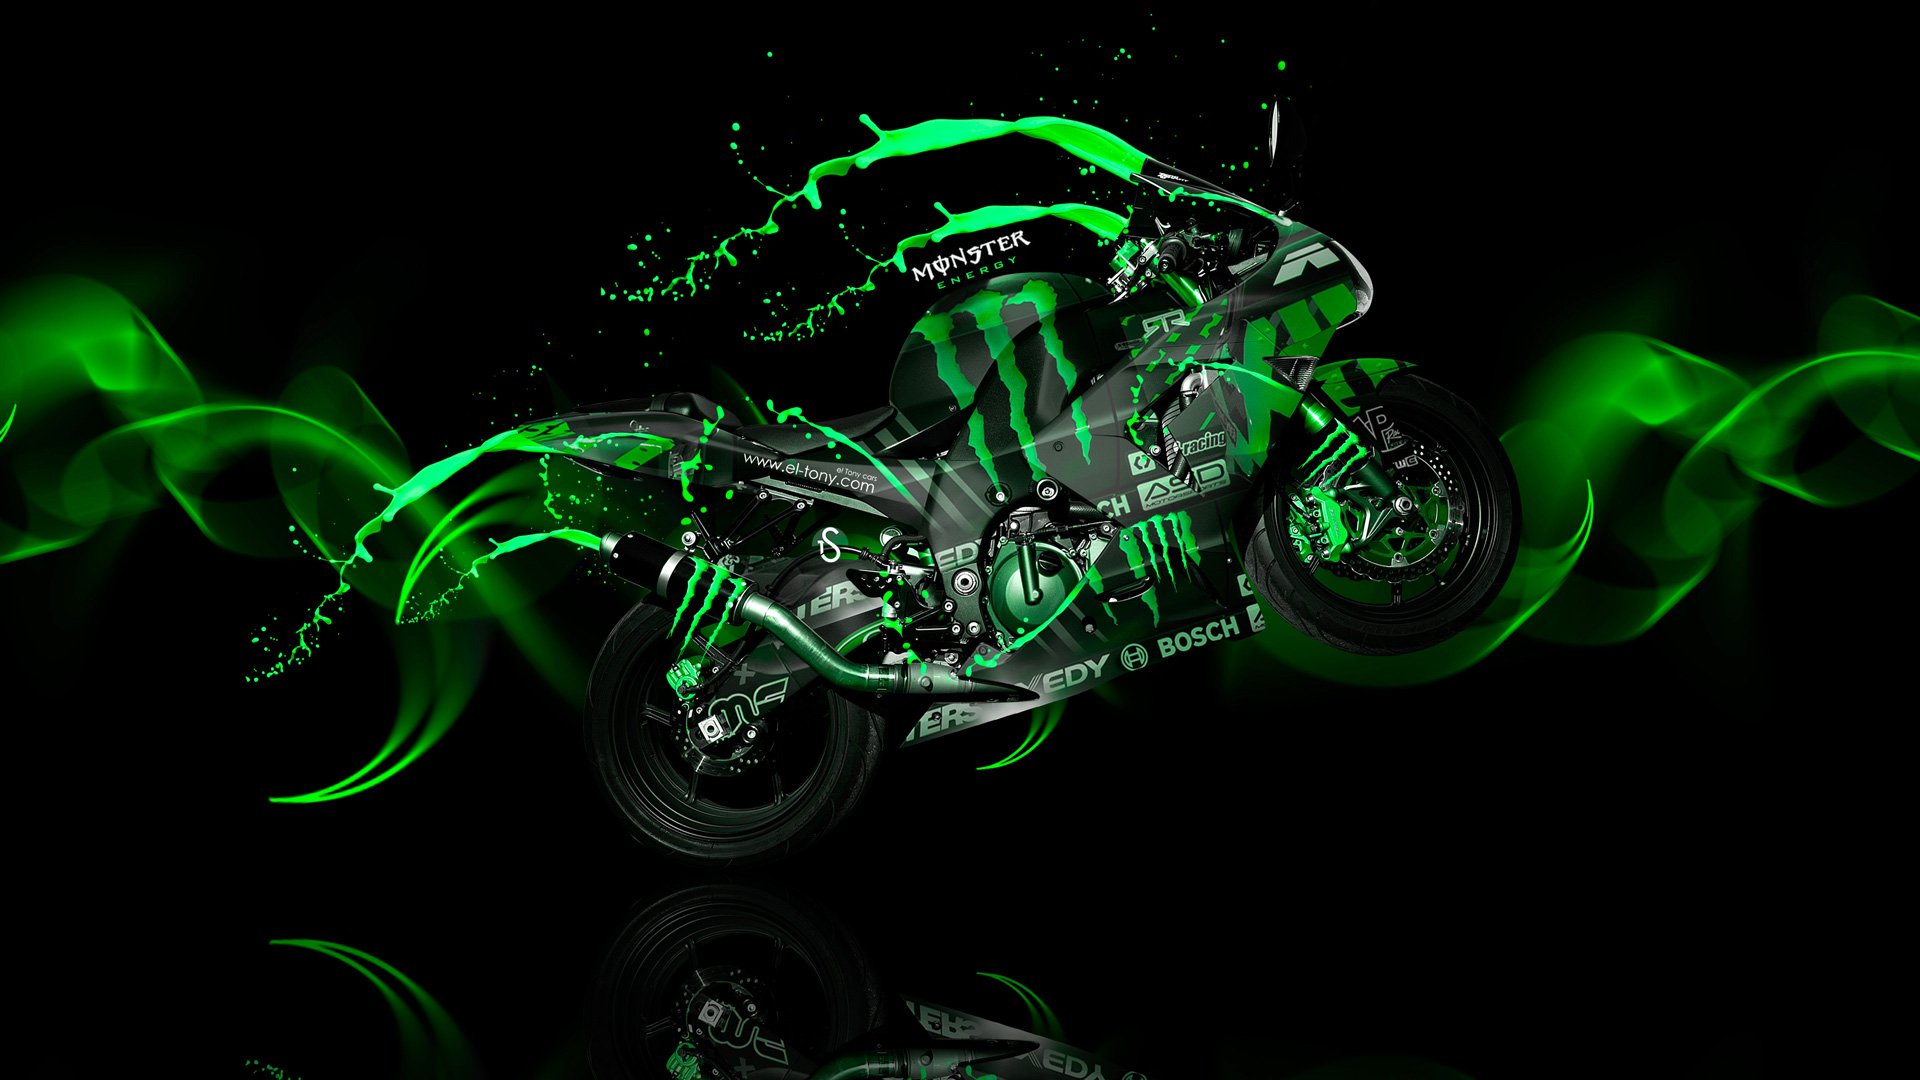 monster energy motorbike wallpaper